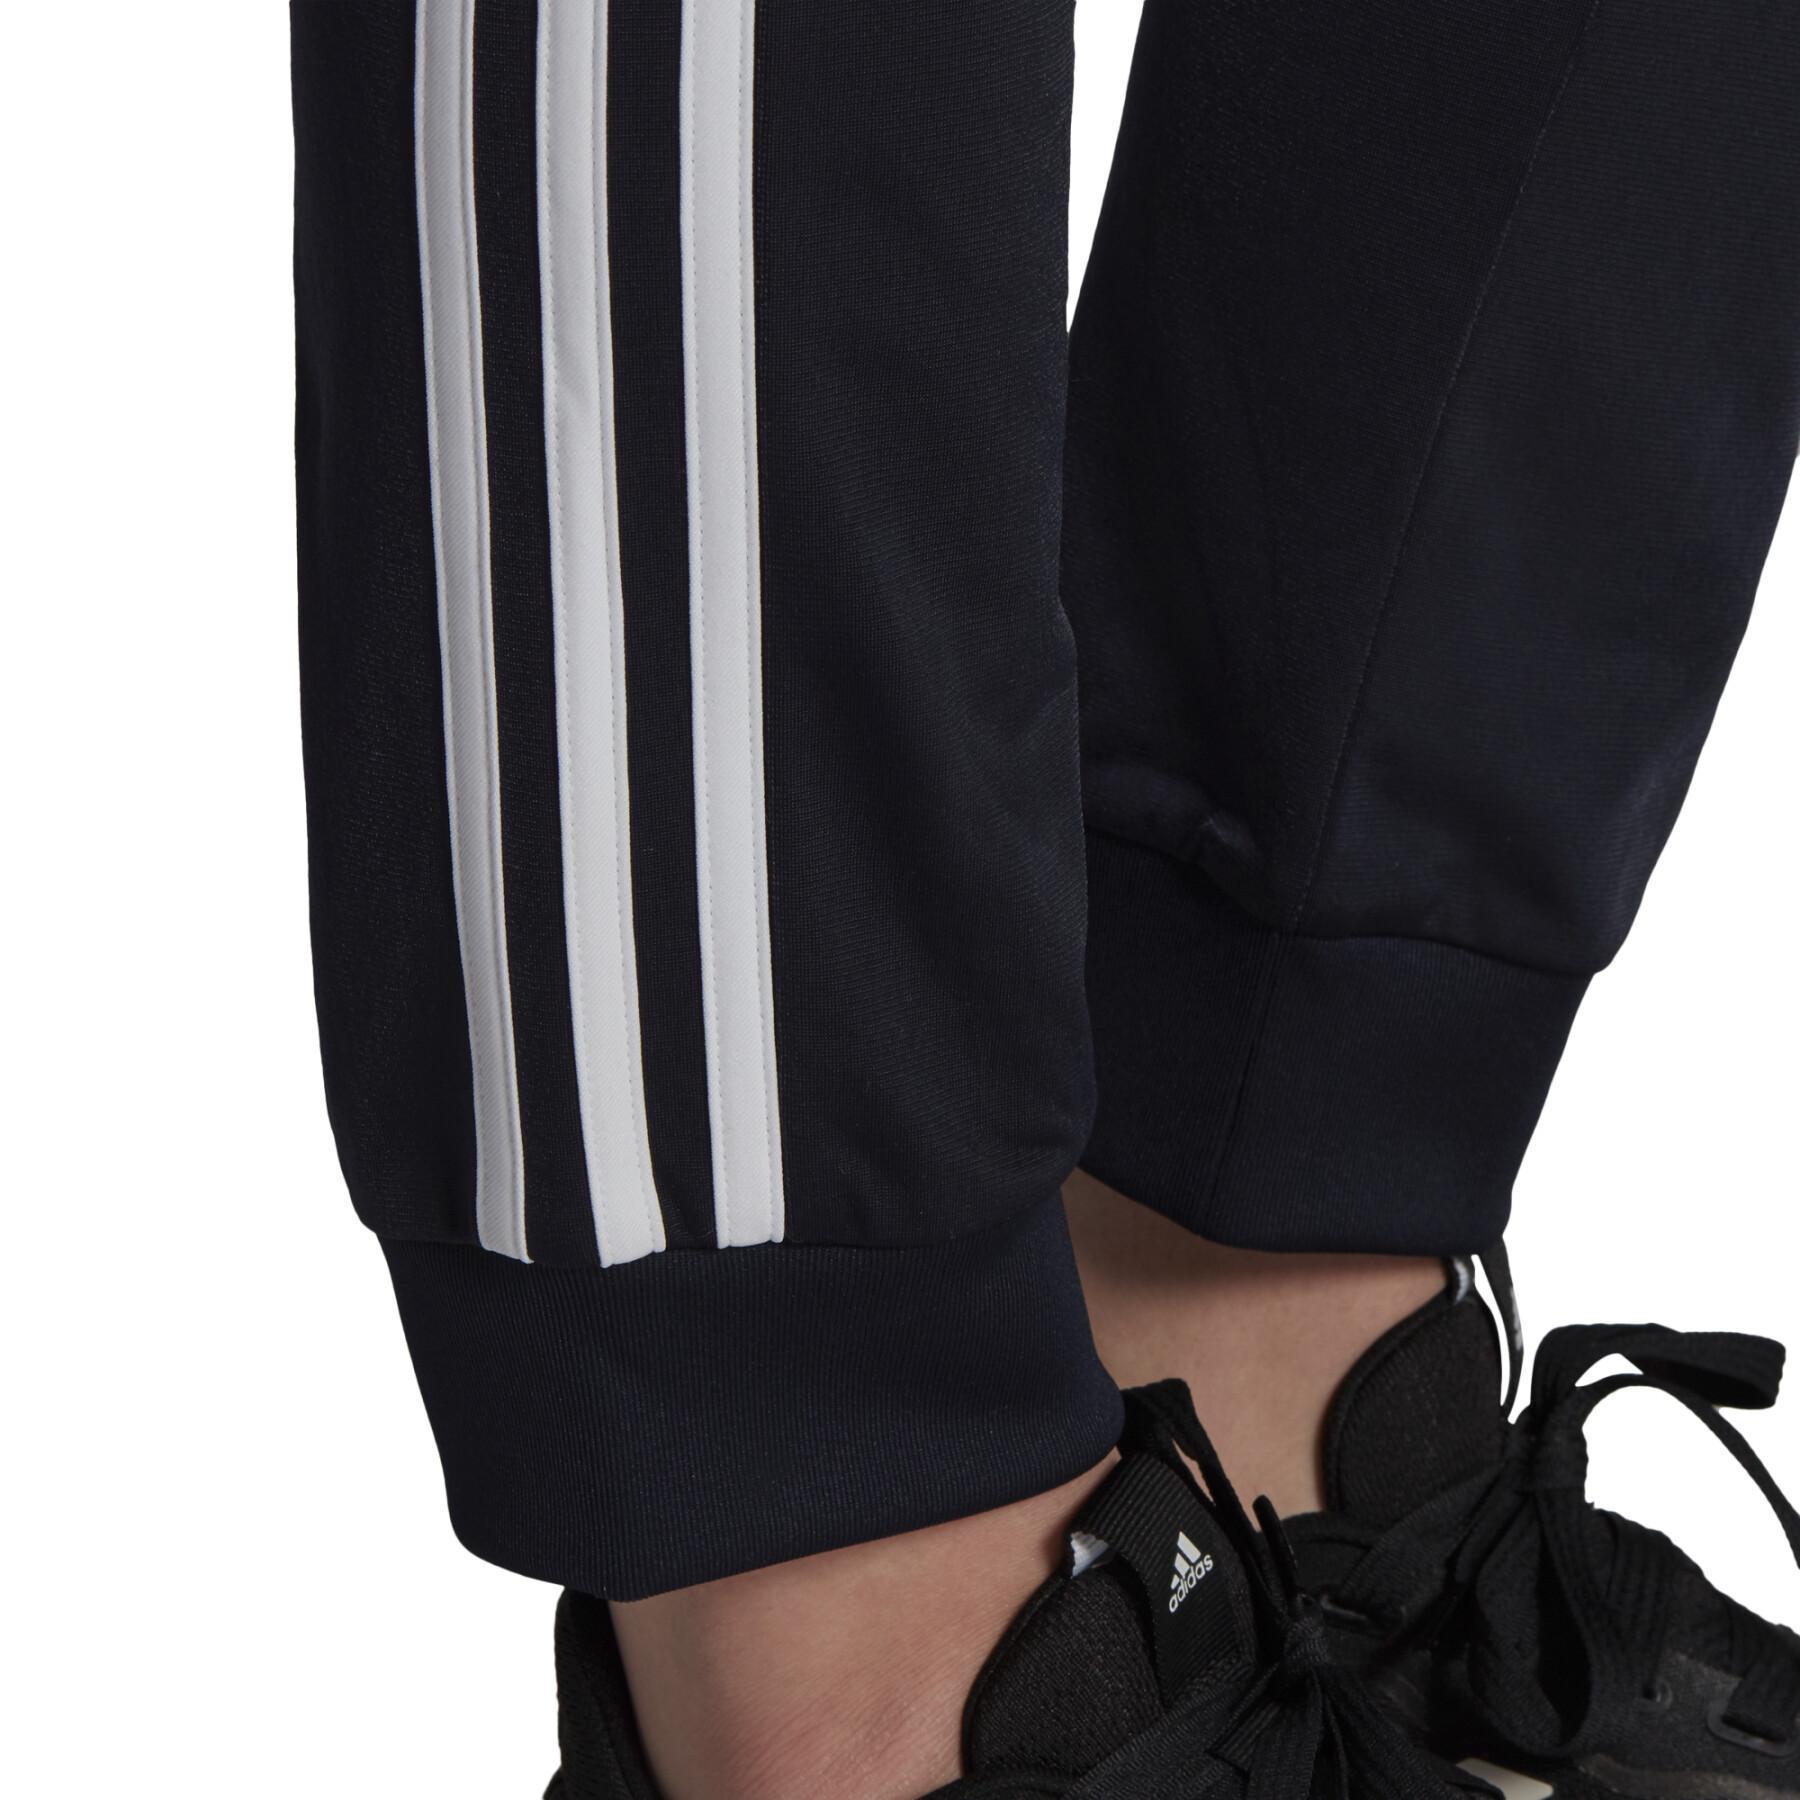 Calças femininas adidas Primegreen Essentials Warm-Up Slim Tapered 3-Stripes